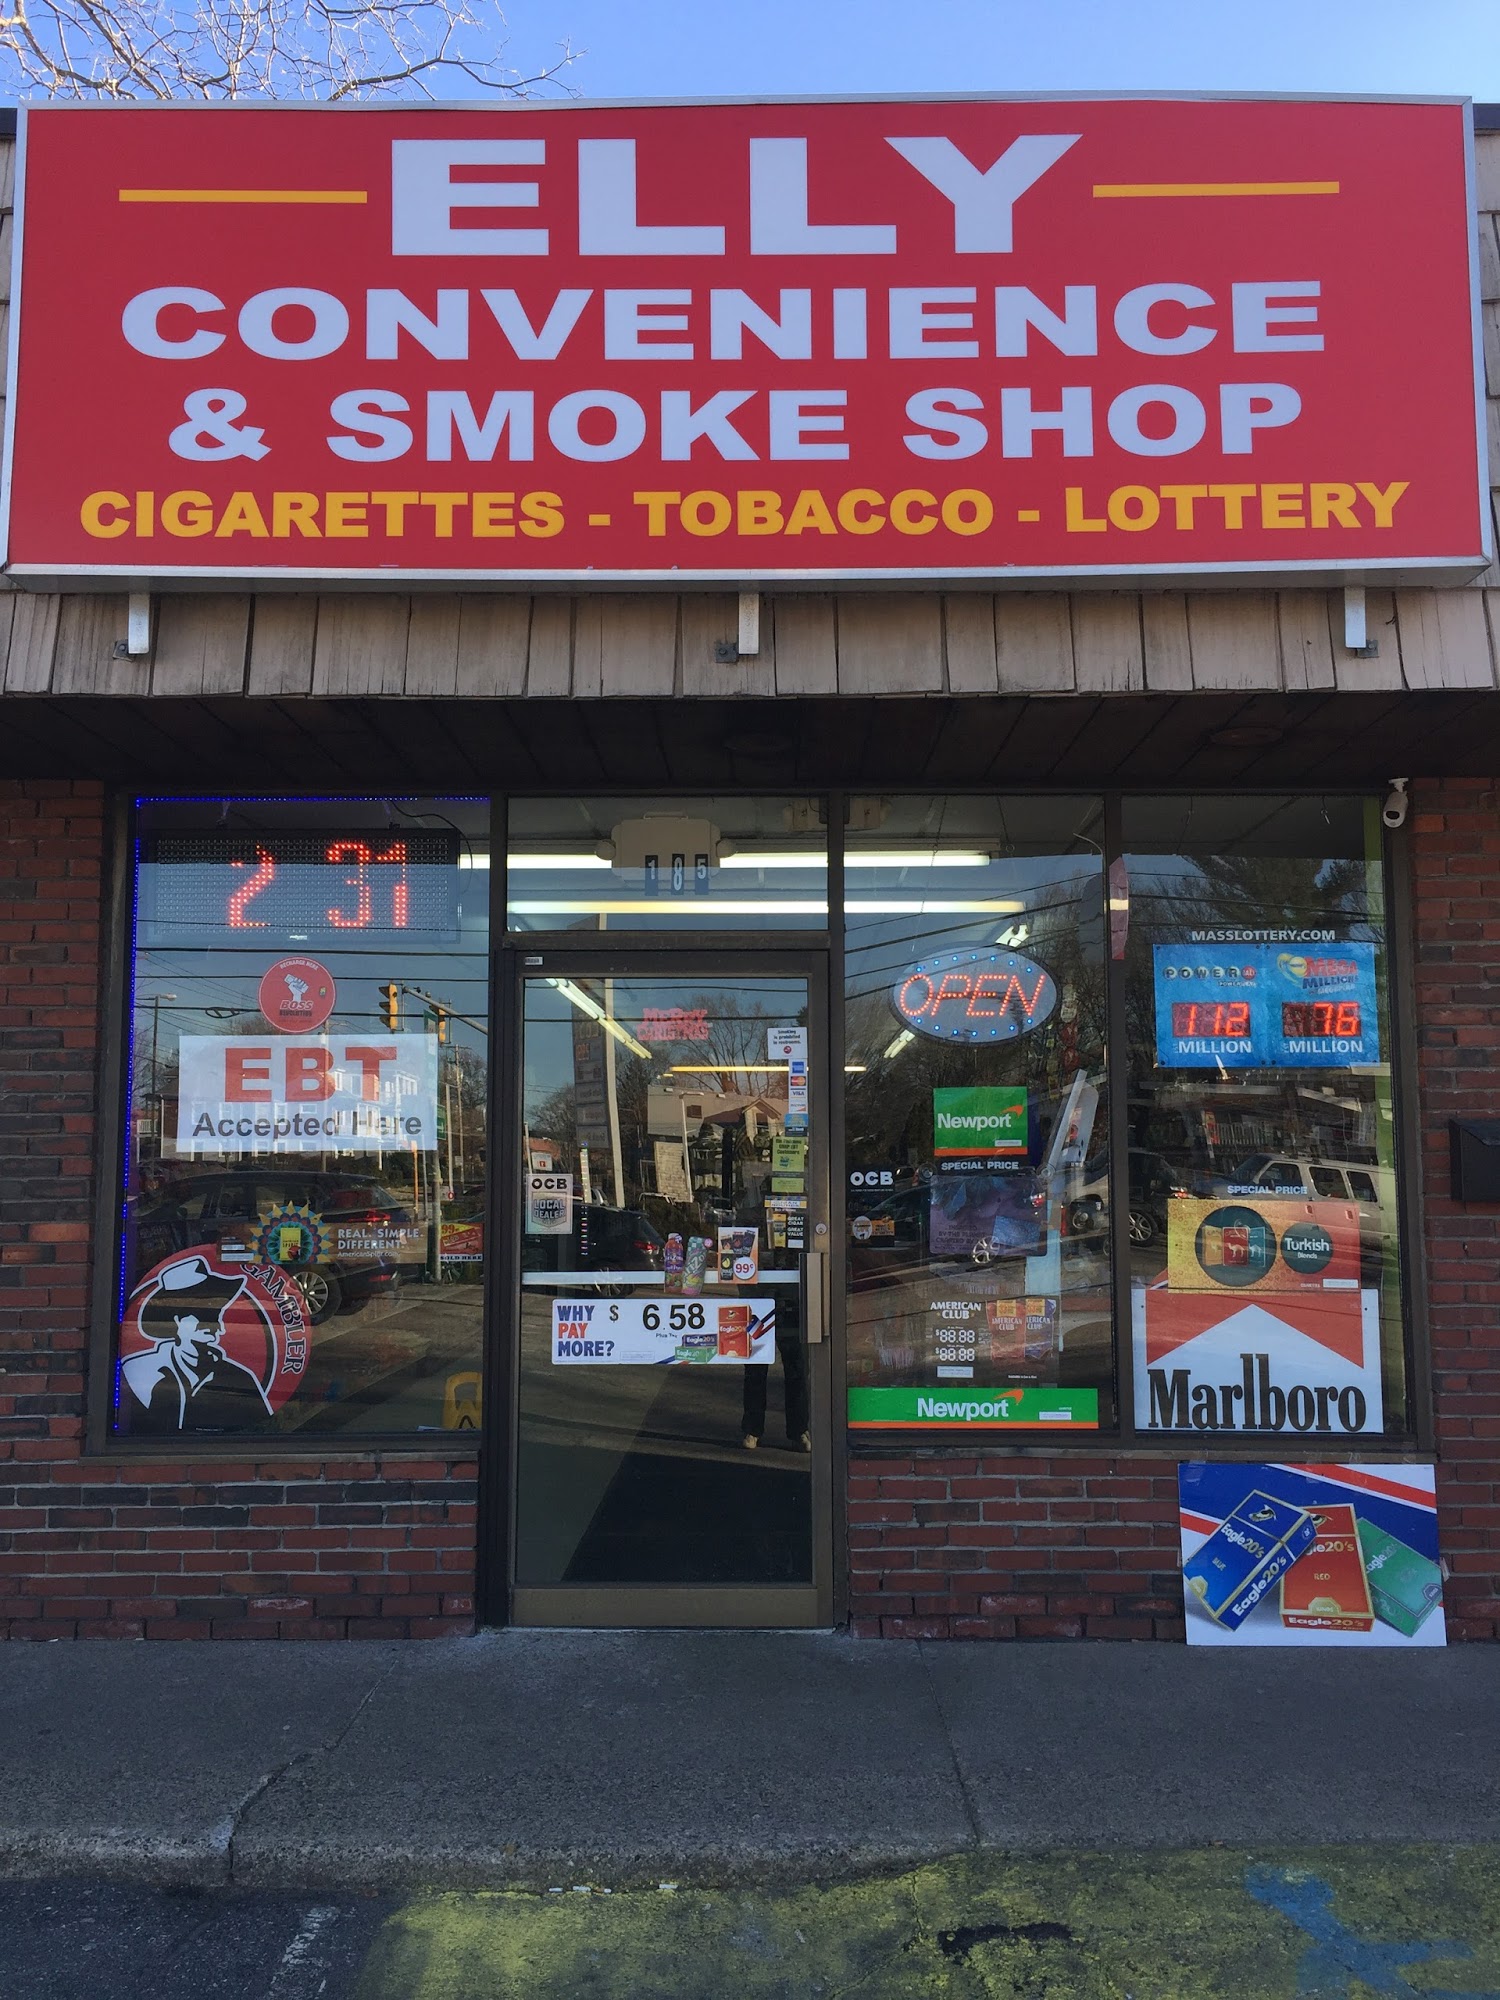 Elly Convenience & Smoke Shop